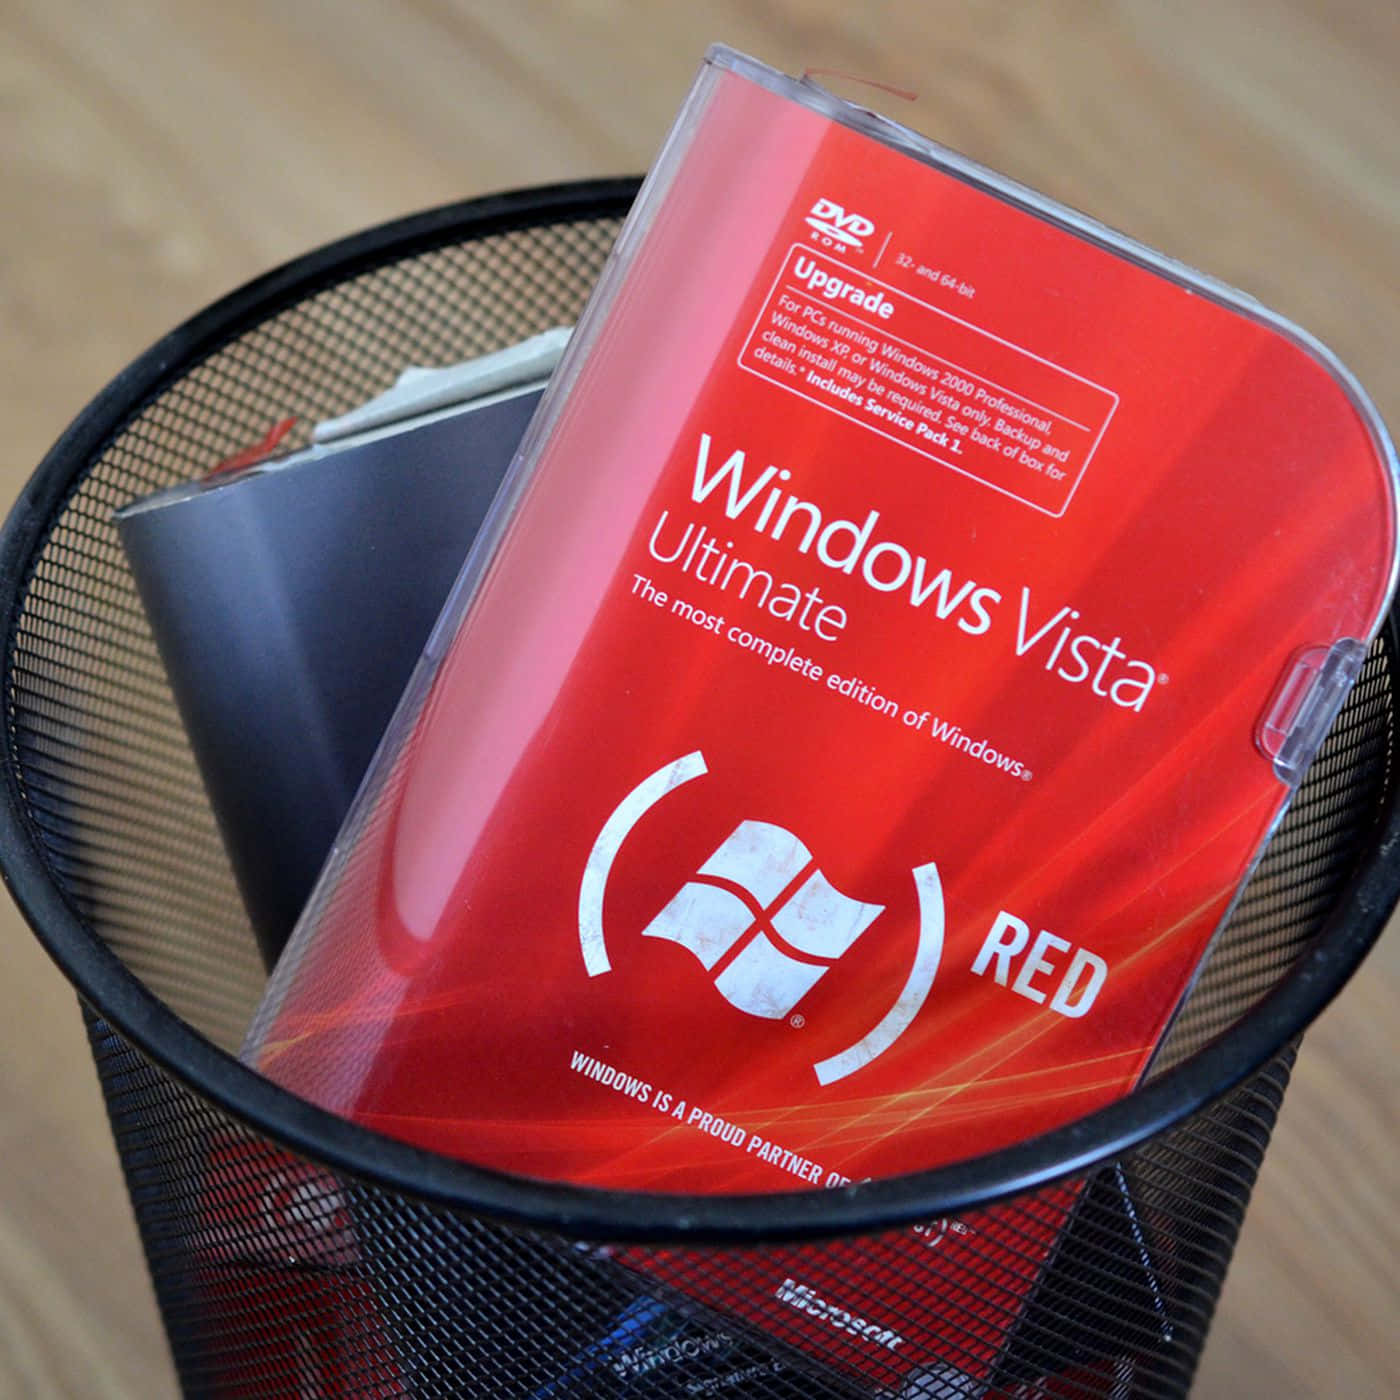 Windowsvista-bilder